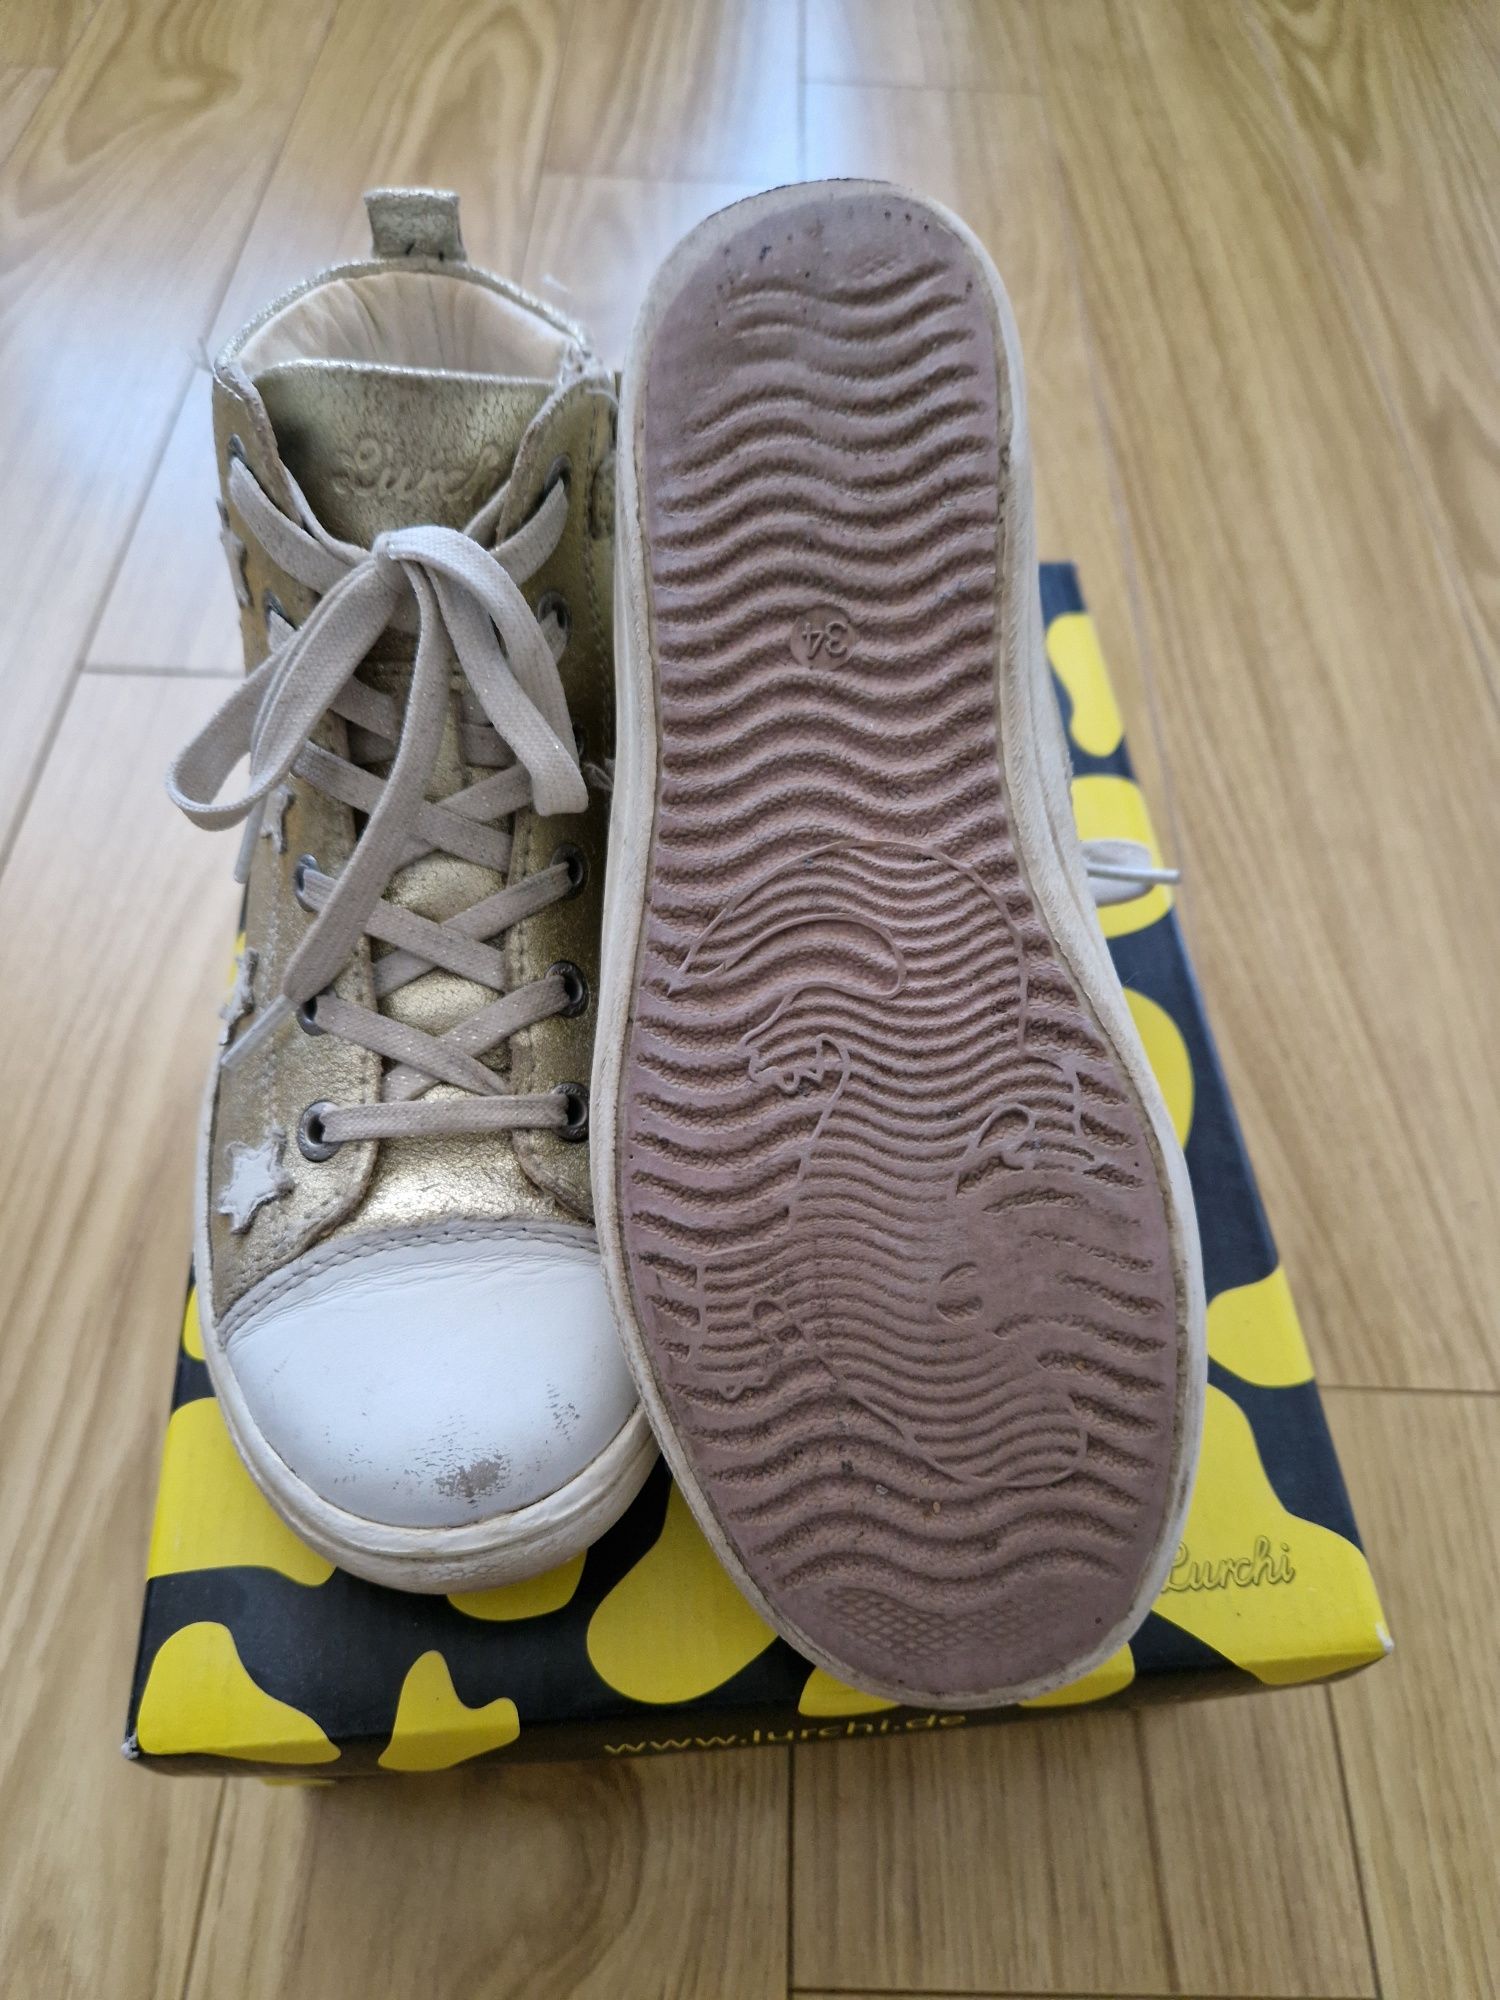 Pantofi / sneakers high Lurchi mărimea 34